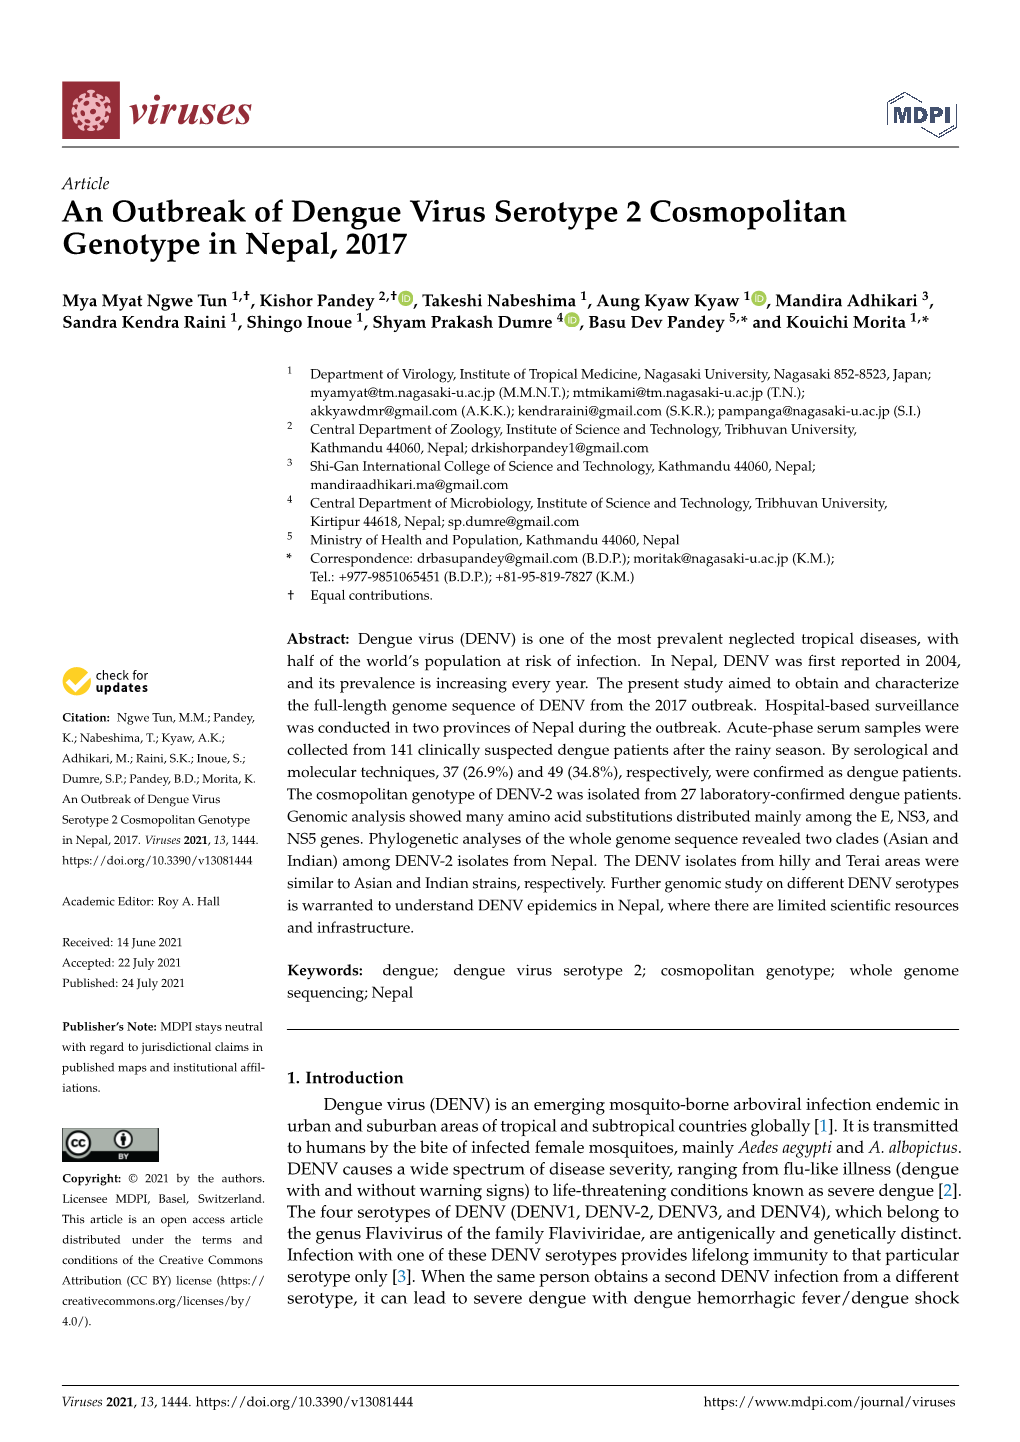 An Outbreak of Dengue Virus Serotype 2 Cosmopolitan Genotype in Nepal, 2017